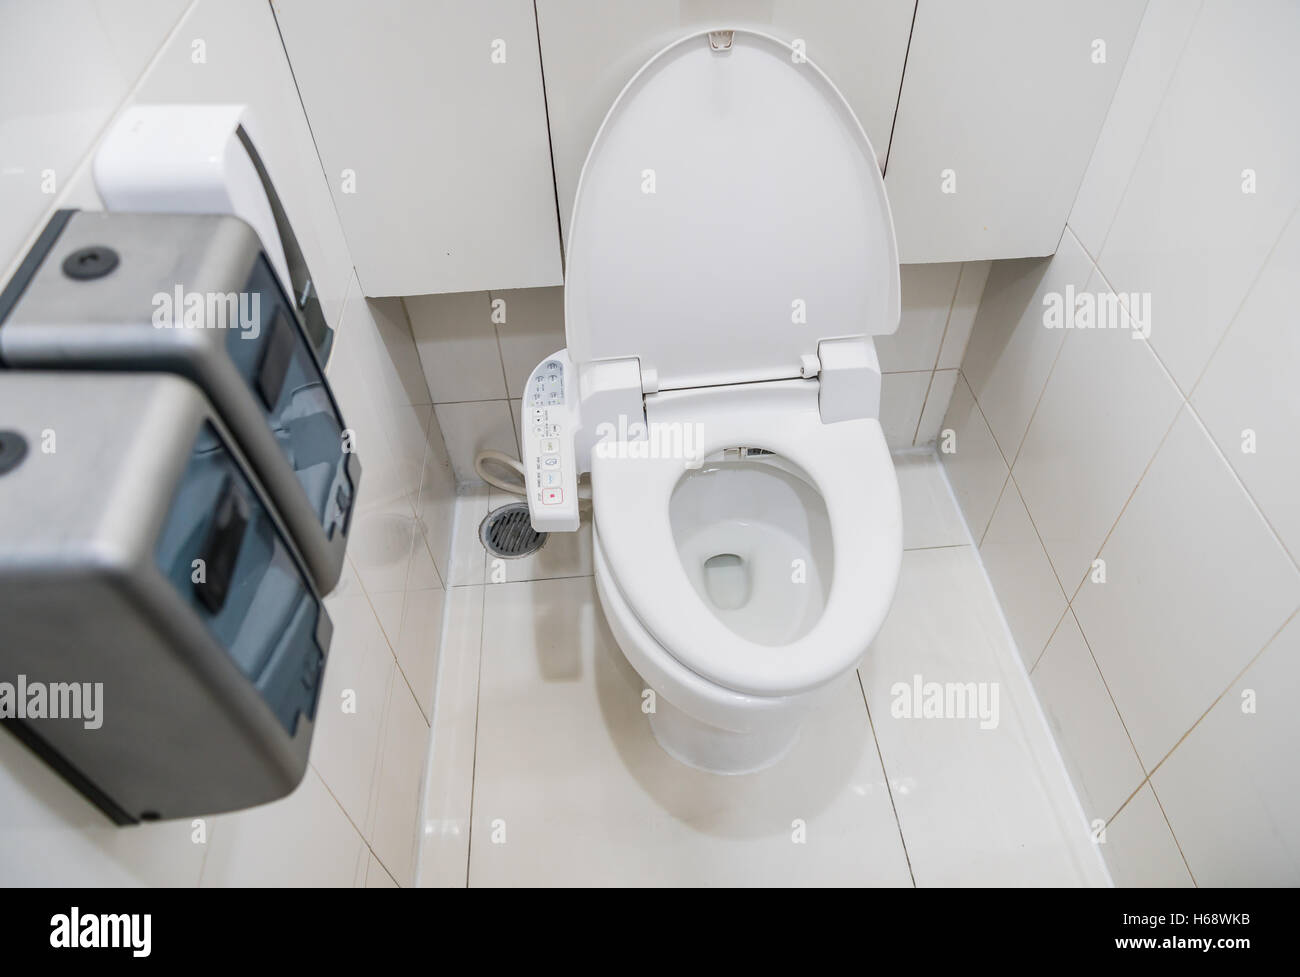 Toilettes avec chasse d'eau automatique siège électronique Banque D'Images